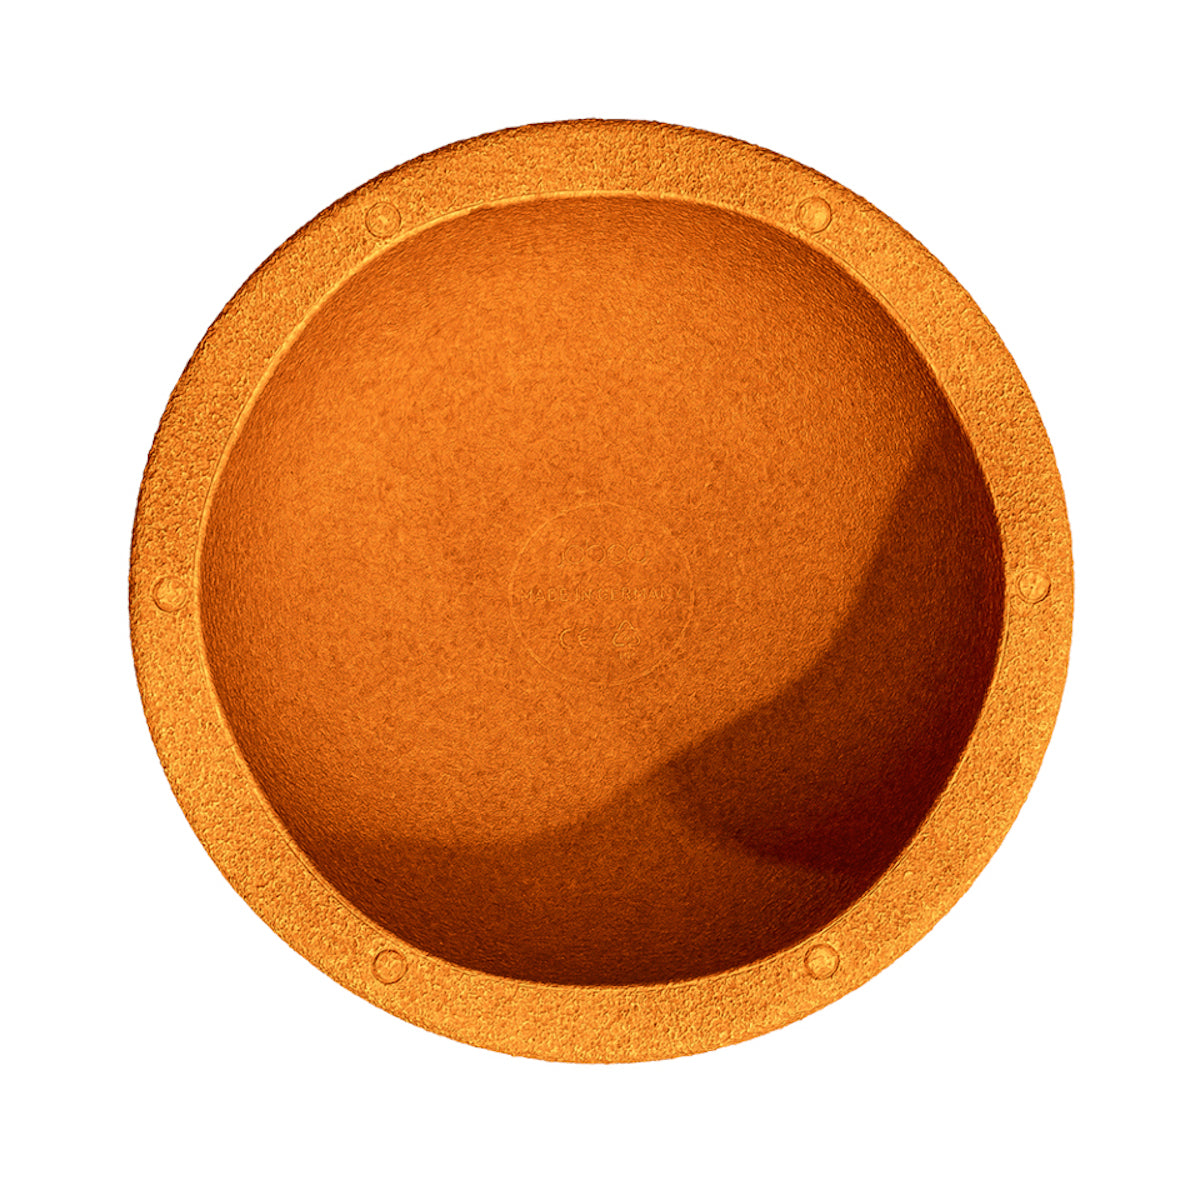 Stapelstein Original oranje is het perfecte, duurzame, open einde speelgoed. Gebruik de steen om te balanceren, te bouwen of als krukje of opstapje; de mogelijkheden zijn eindeloos. VanZus.